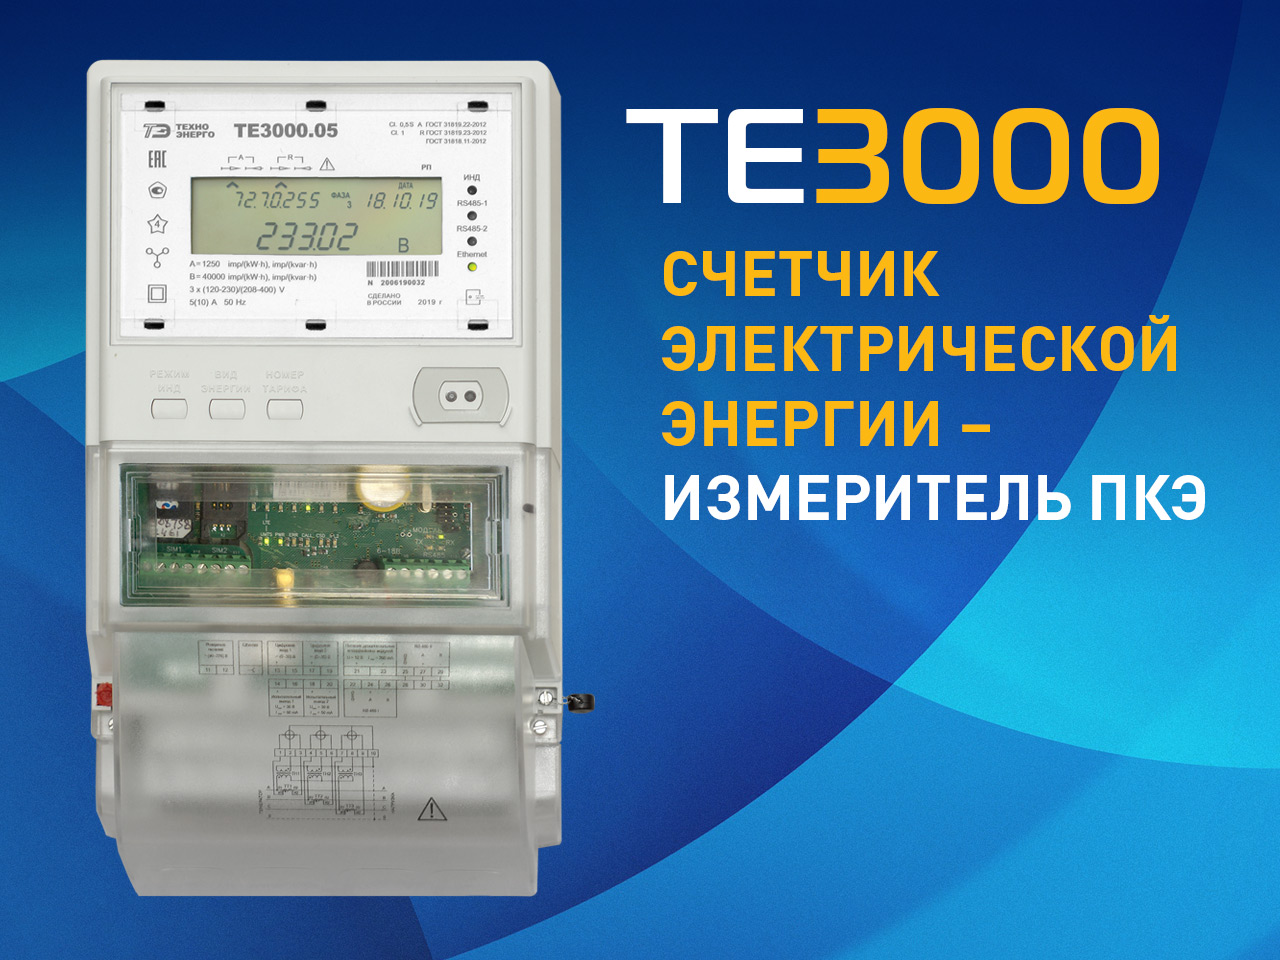 Счетчик электроэнергии ТЕ3000 допущен к применению на объектах ПАО "Россети" 